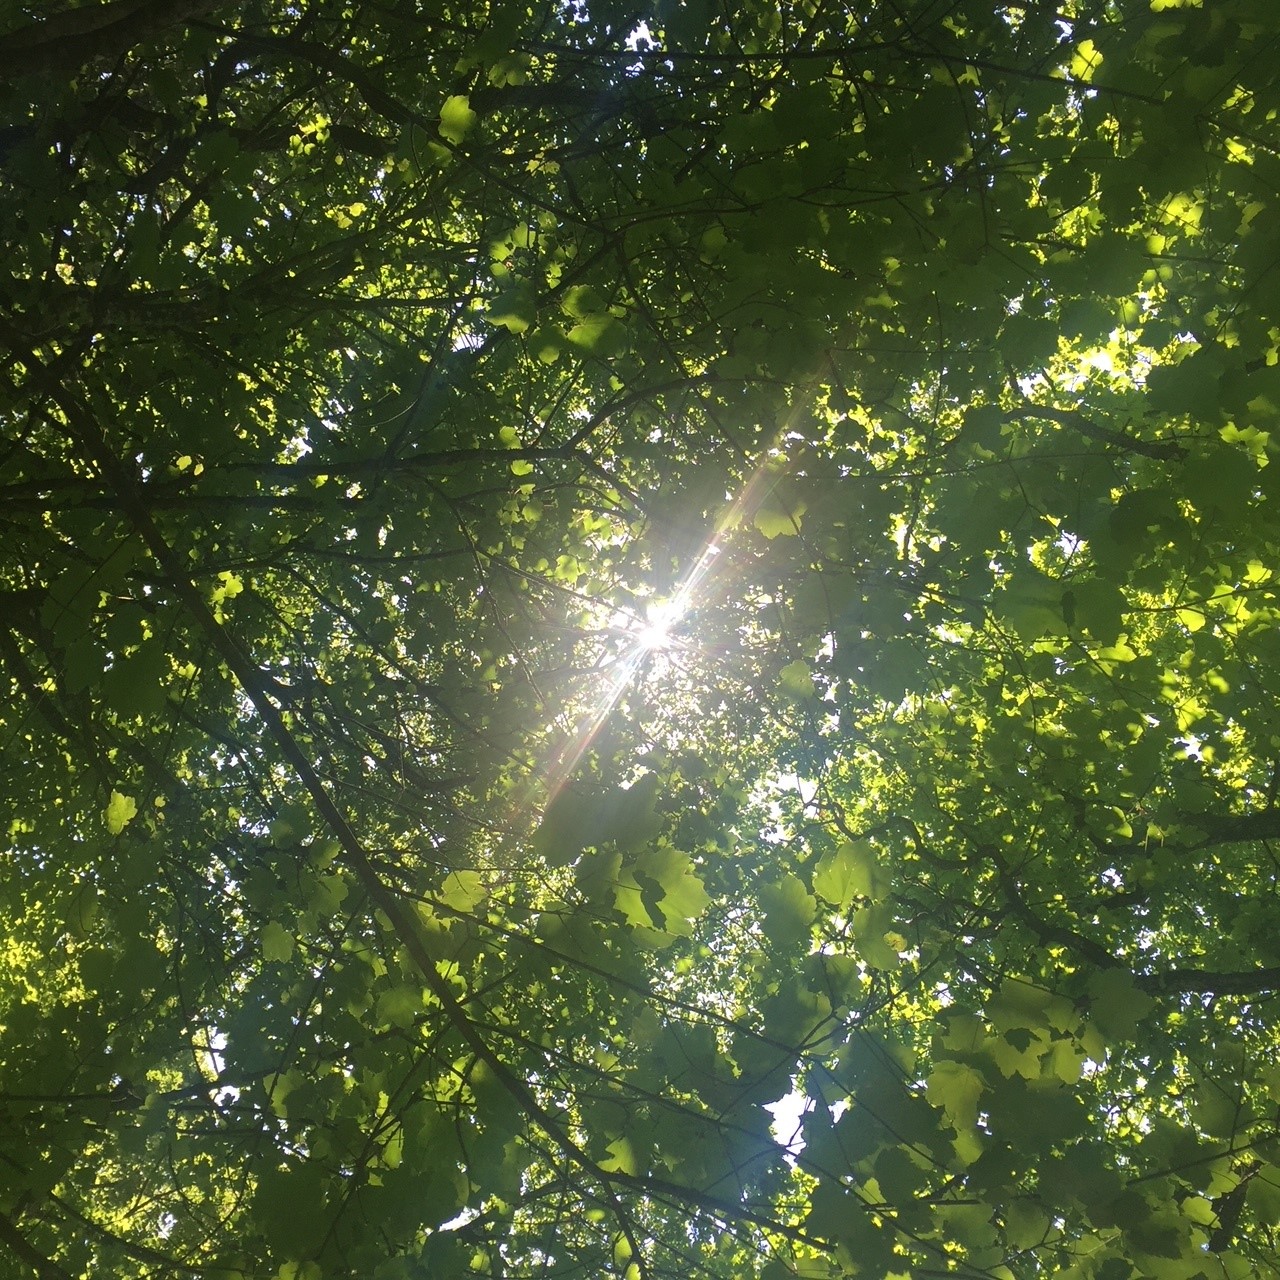 Tree and light